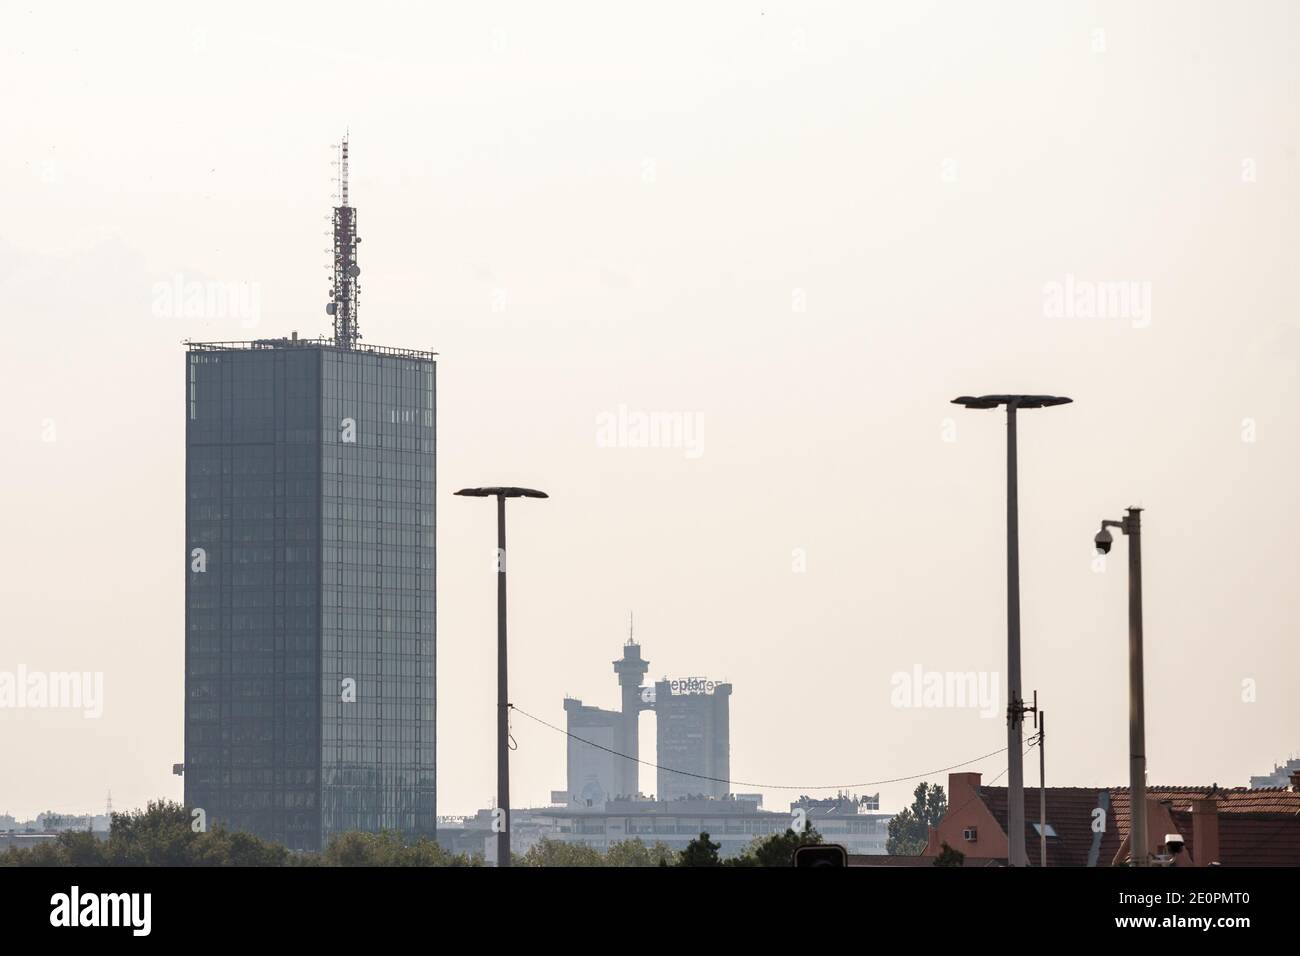 BELGRAD, SERBIEN - 21. AUGUST 2018: Skyline und Panorama Neu-Belgrad (Novi Beograd) bei Sonnenuntergang, mit dem Usce-Turm vor und dem Genex-Turm, oder Z Stockfoto